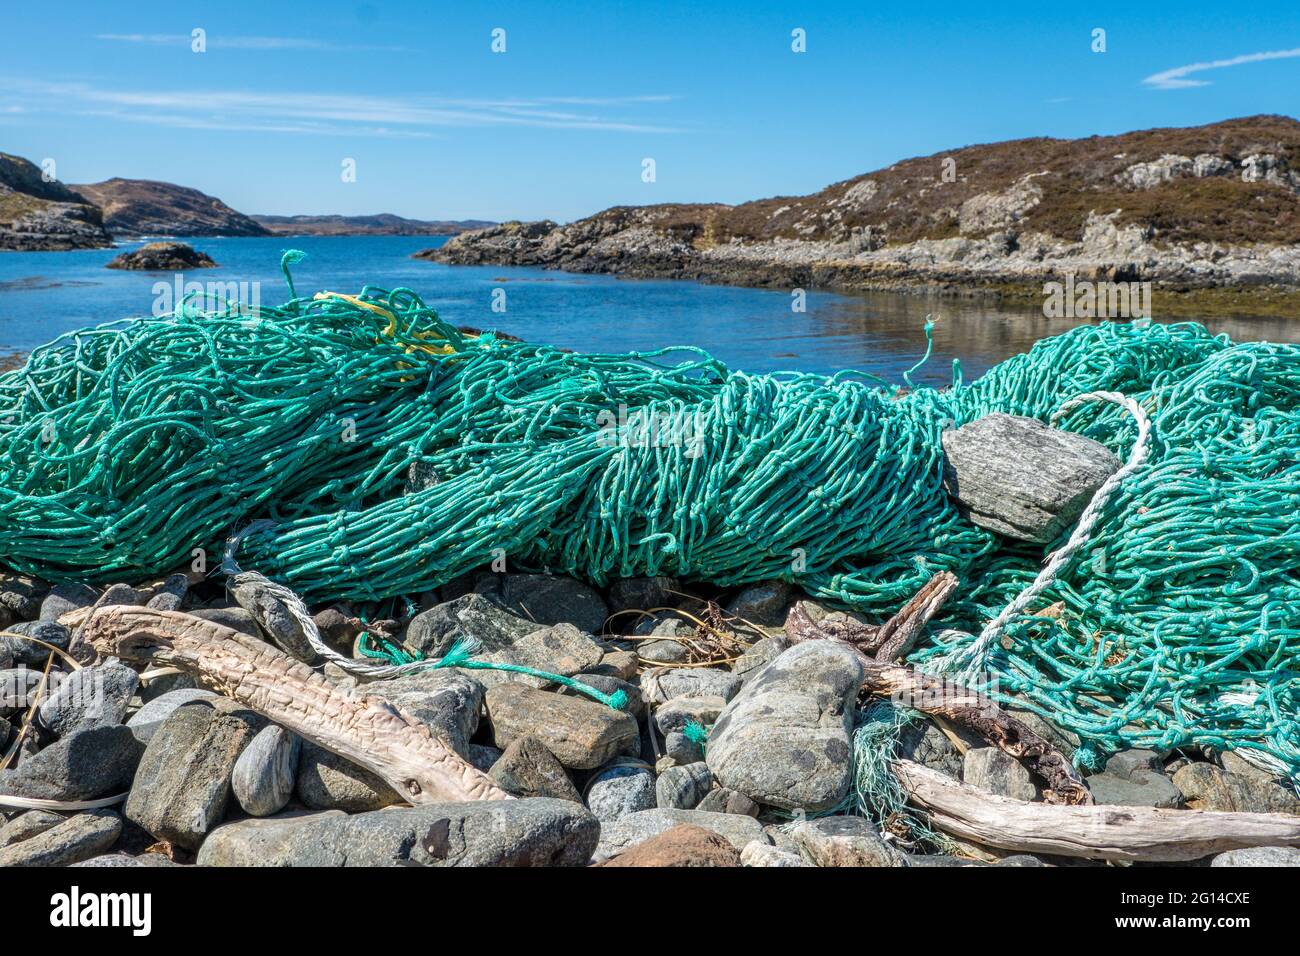 Las redes de pesca abandonadas, uno de los problemas más graves